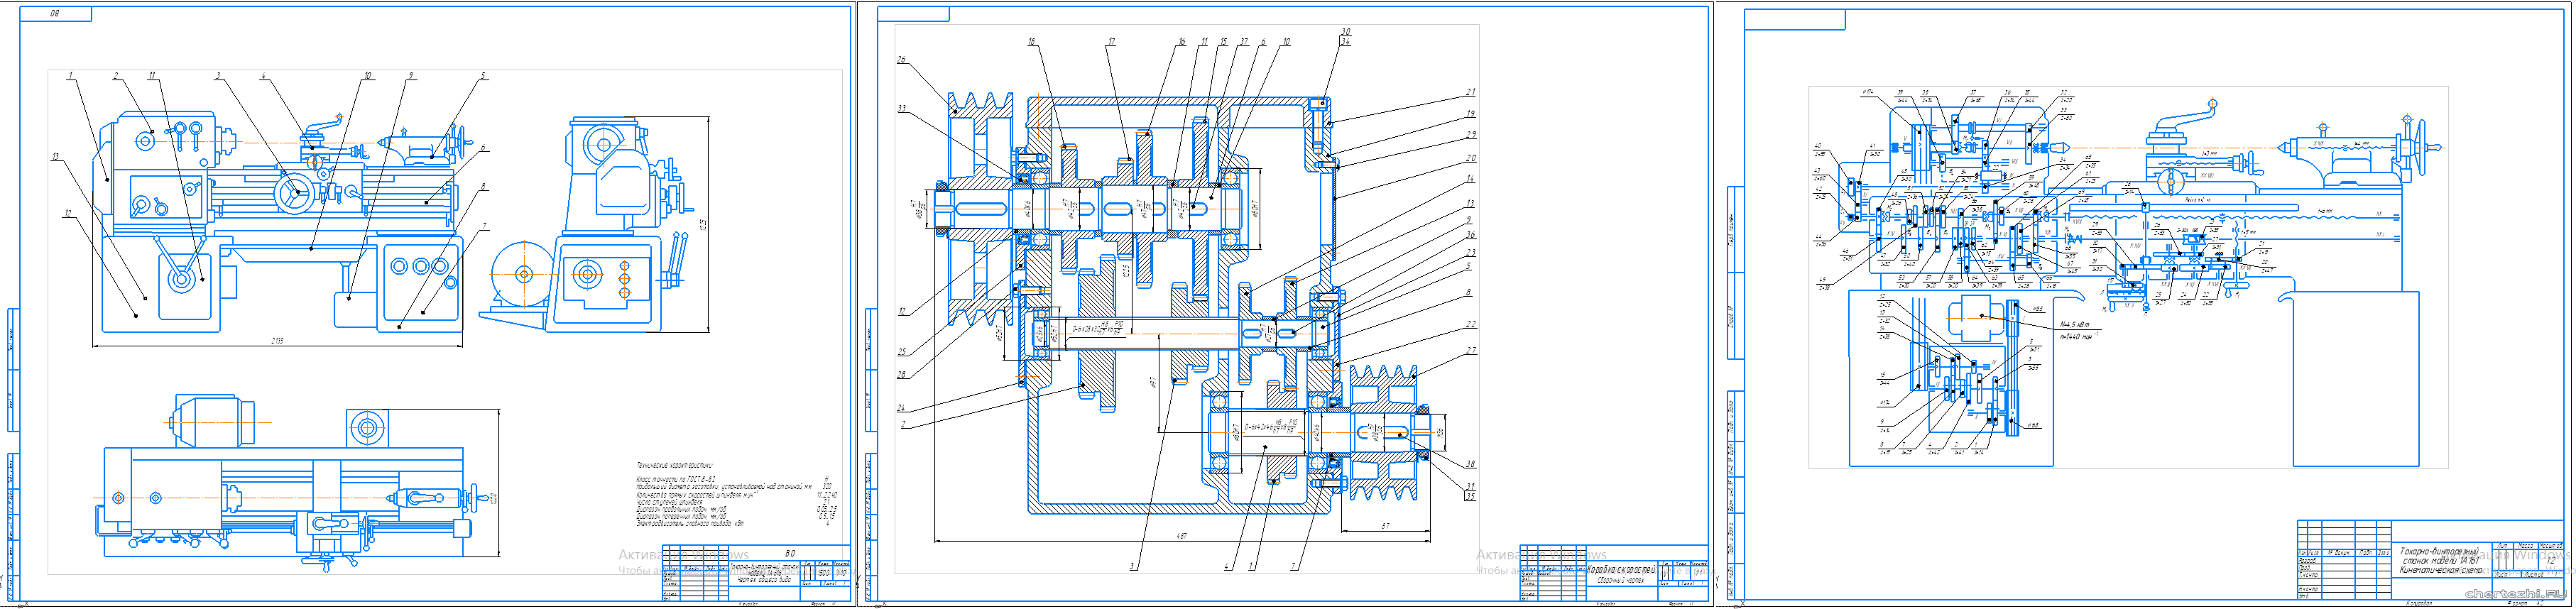 Курсовой проект - Токарно-винторезный станок модели 1А616